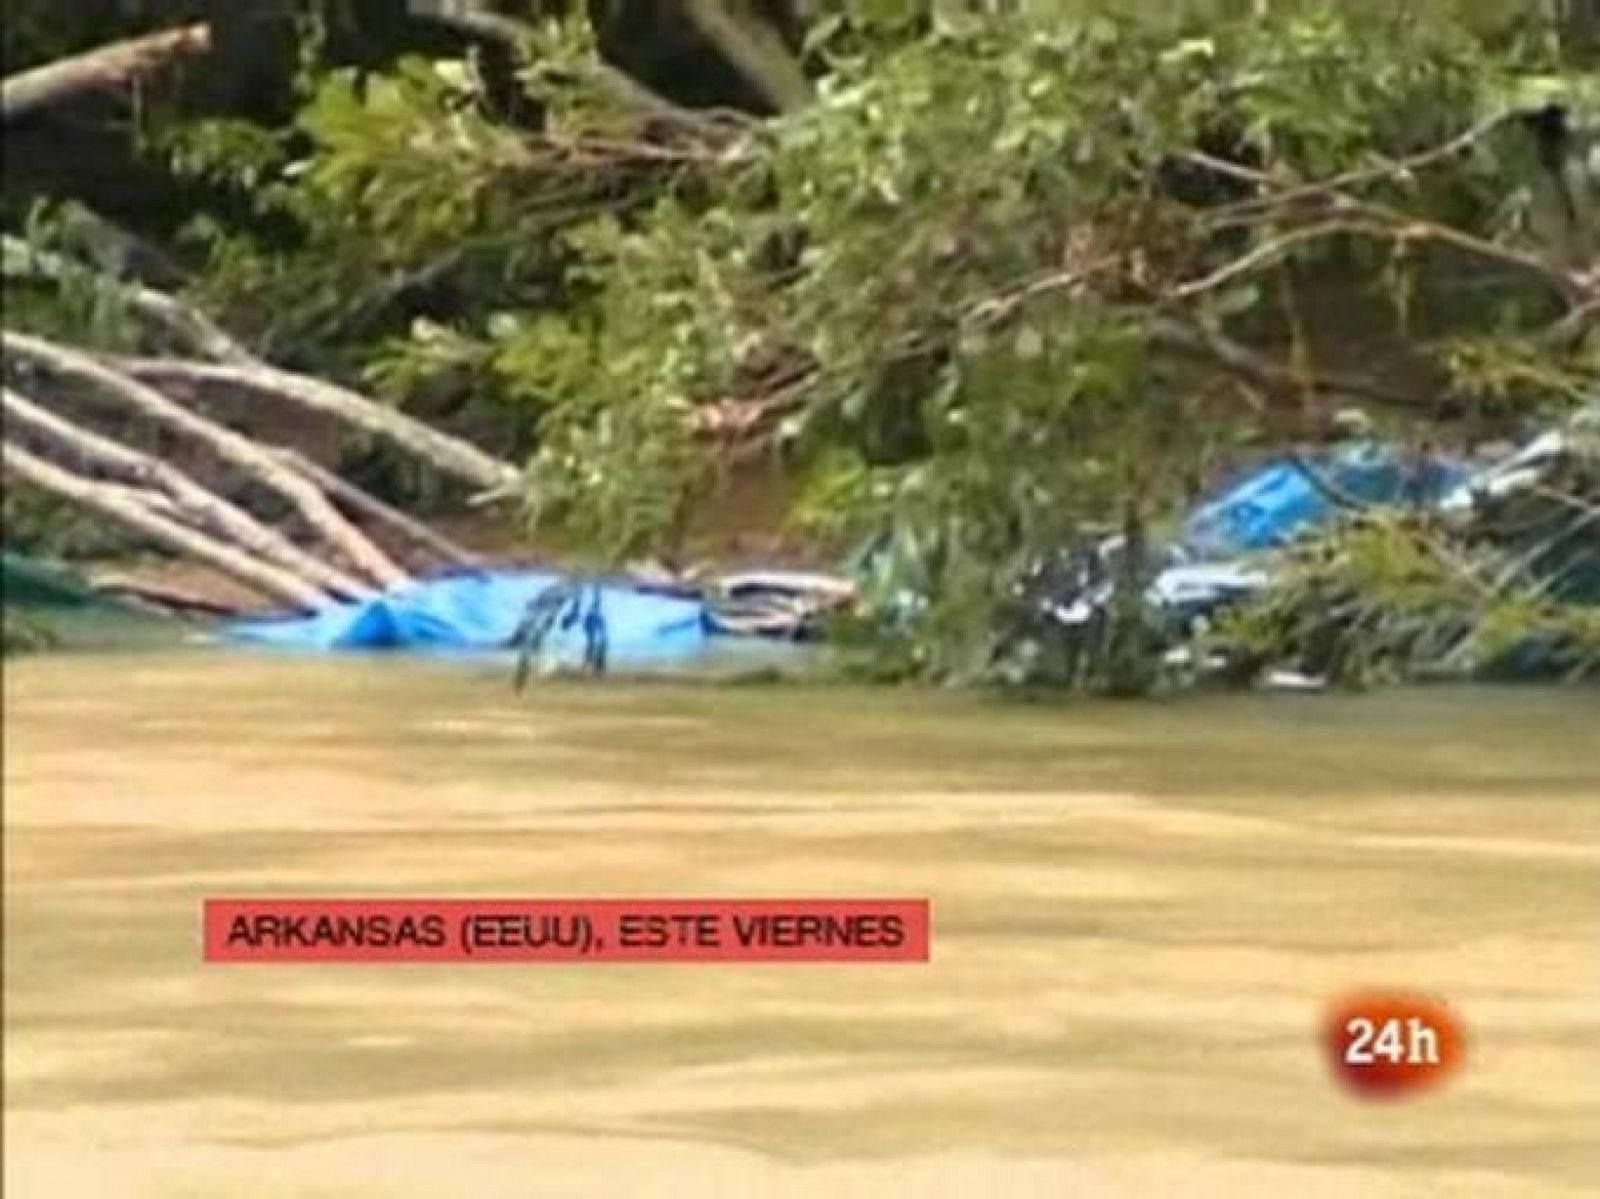 Al menos 20 personas han muerto ahogadas por las crecidas repentinas de los ríos Caddo y Little Missouri en un área de acampada del sudoeste de Arkansas, tras las intensas lluvias en días recientes, segun ha informado el gobernador del estado, Mike Beebe, tras sobrevolar la zona en helicóptero.